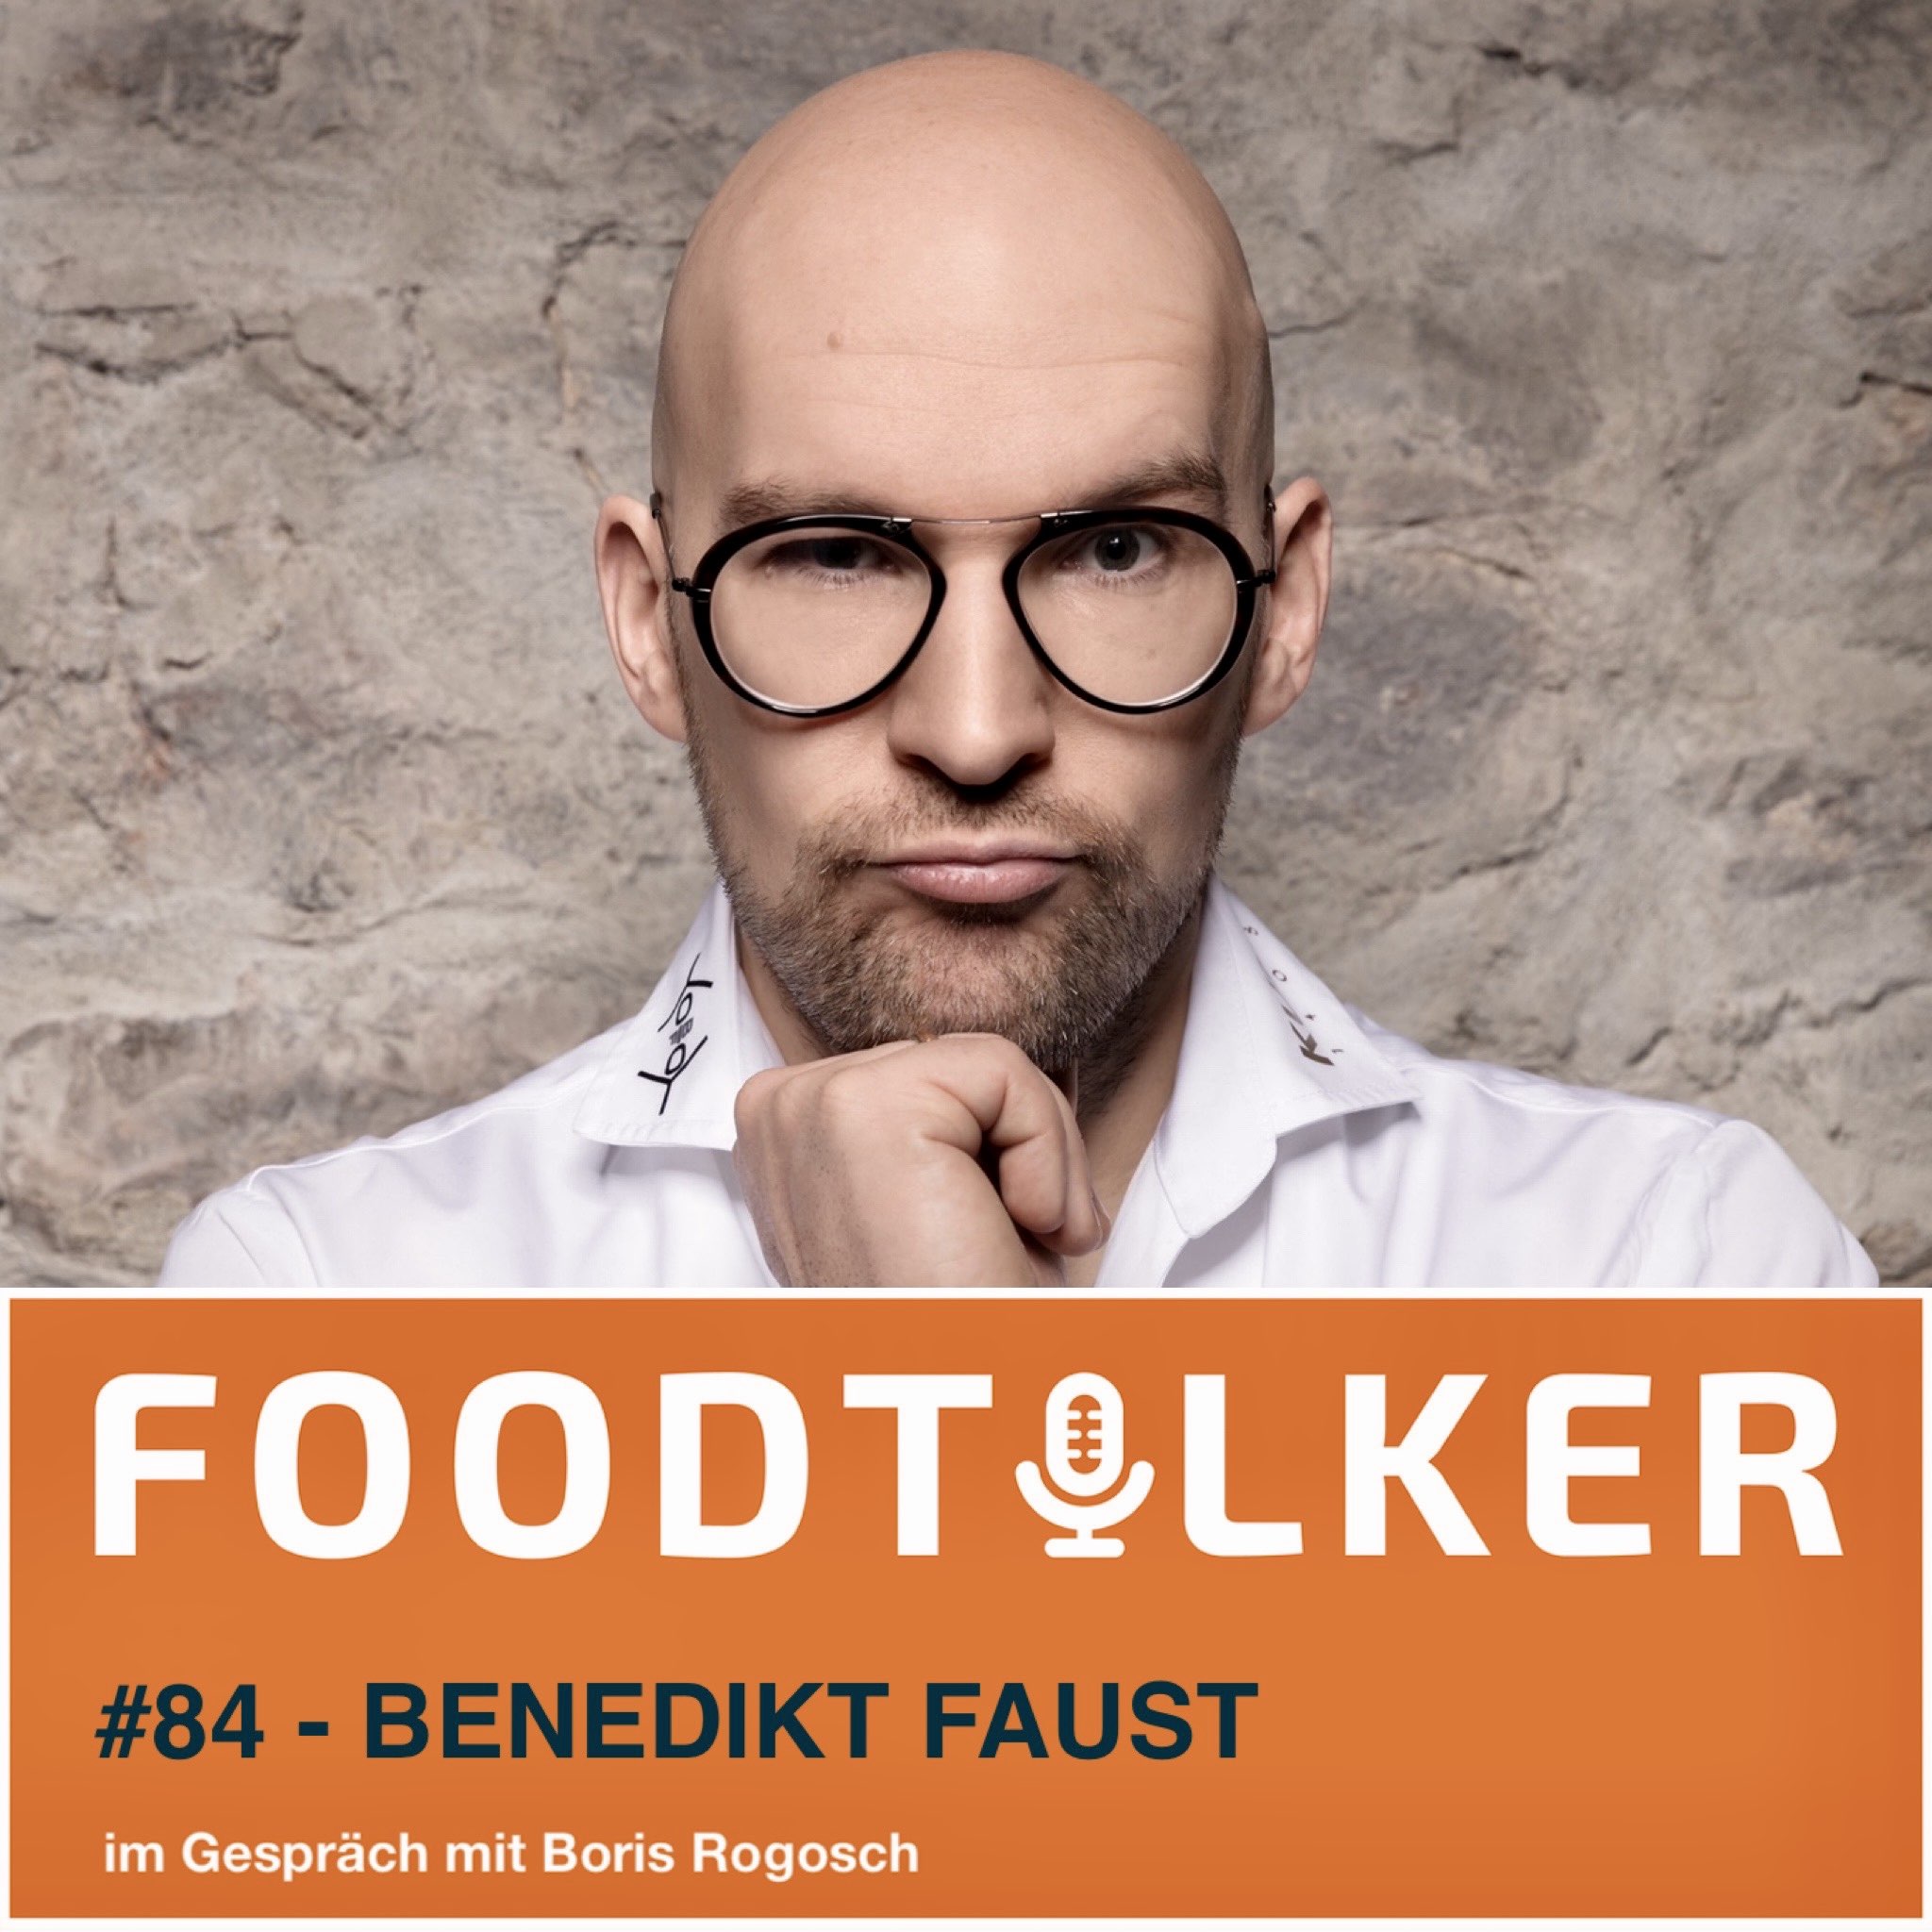 Benedikt Faust